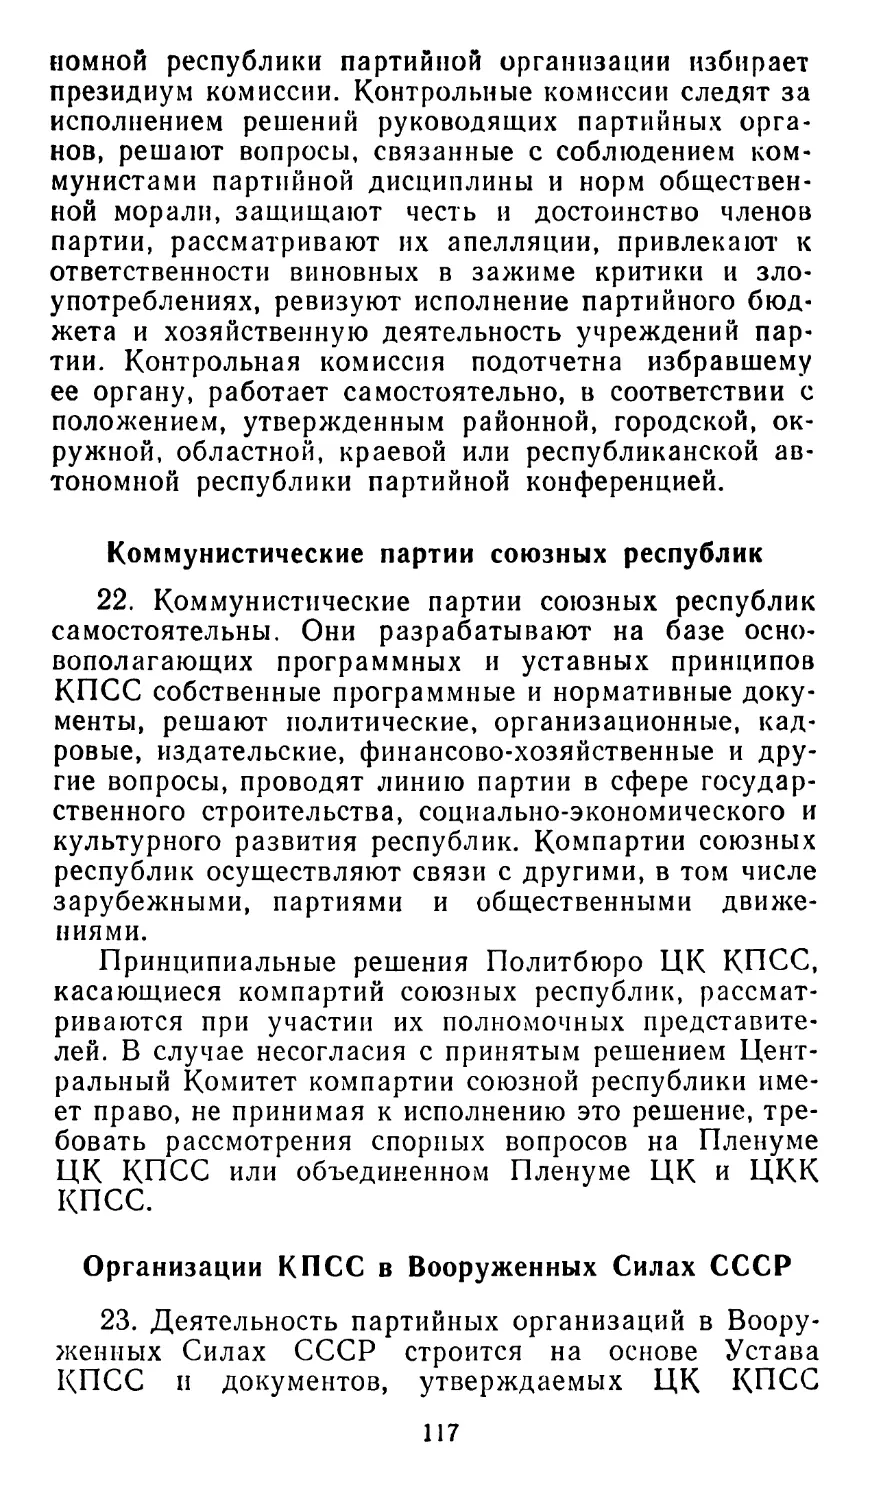 Коммунистические партии союзных республик
Организации КПСС в Вооруженных Силах СССР